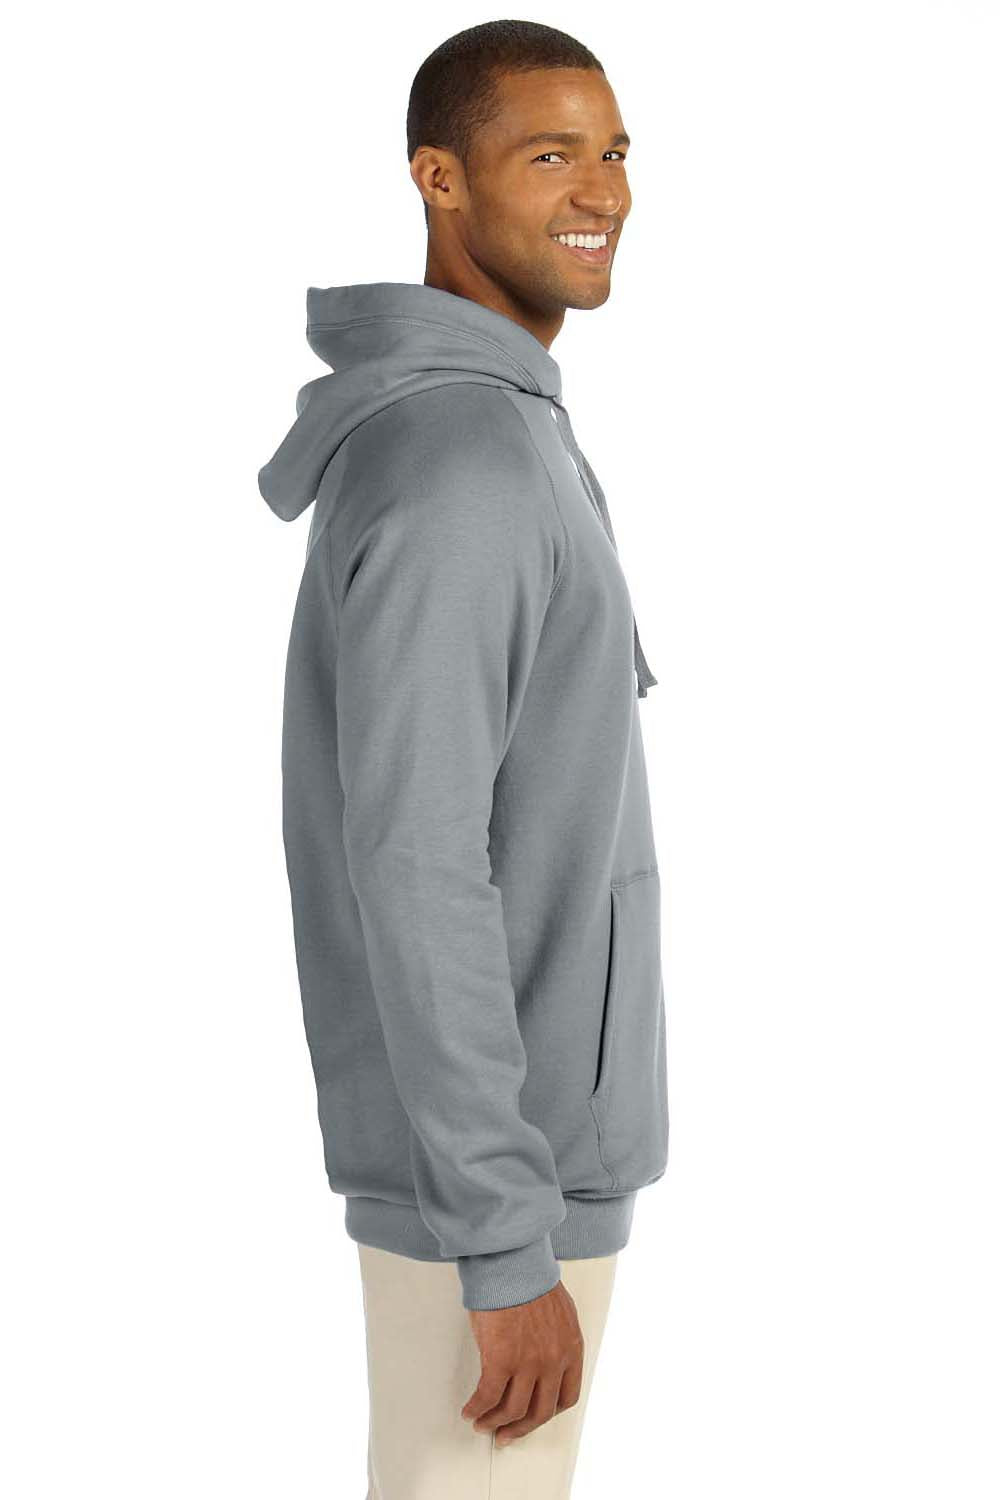 Hanes N270 Mens Nano Fleece Hooded Sweatshirt Hoodie Vintage Grey Side